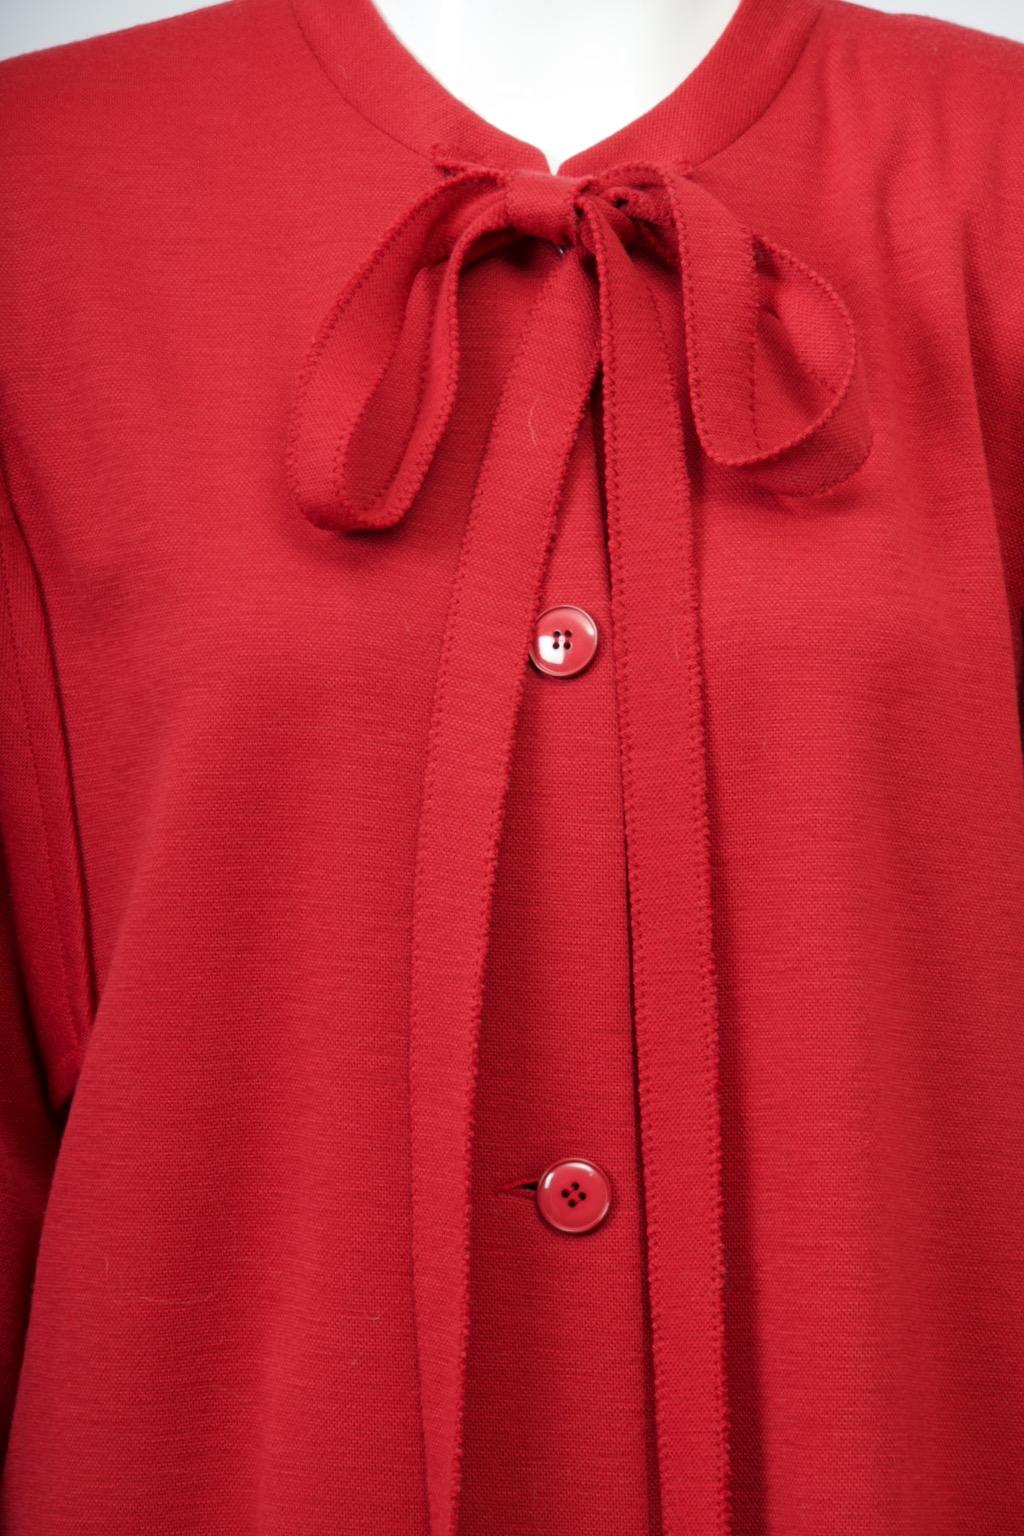 Manteau ou robe pull en laine rouge à double maille Sonia Rykiel des années 1980. Le nœud au cou, caractéristique de la créatrice, s'obtient en nouant les longues bandes de maille attachées sur le devant du col. Cette version est unique par la coupe